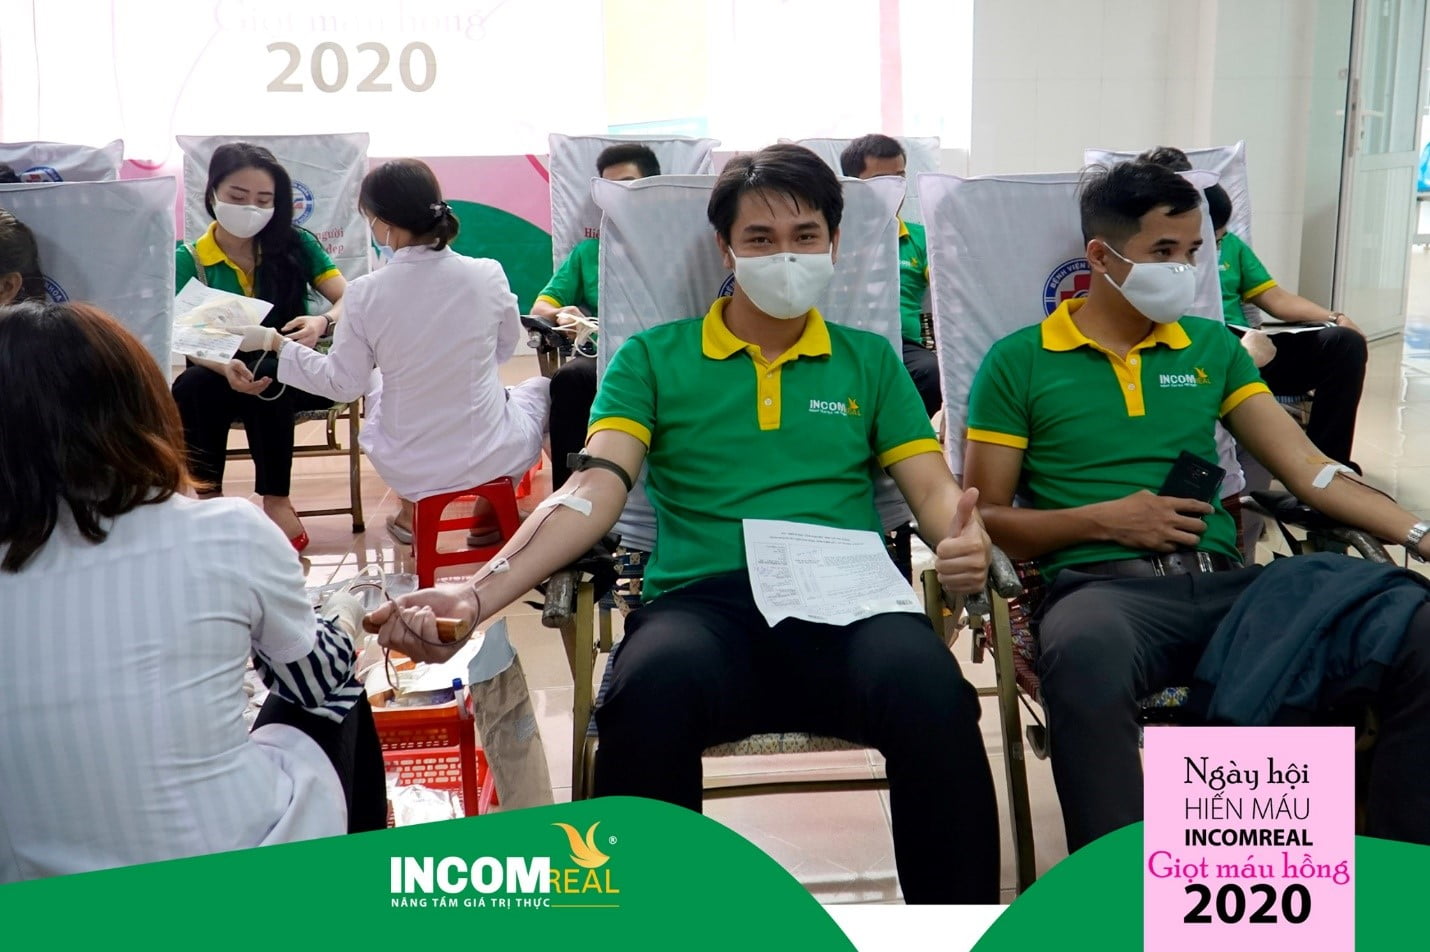 Mặc dù đang trong mùa dịch COVID 2019, bệnh viện đa khoa tỉnh Quảng Ngãi vẫn cố gắng chuẩn bị những biện pháp phòng dịch tốt nhất, để chương trình diễn ra trọn vẹn.